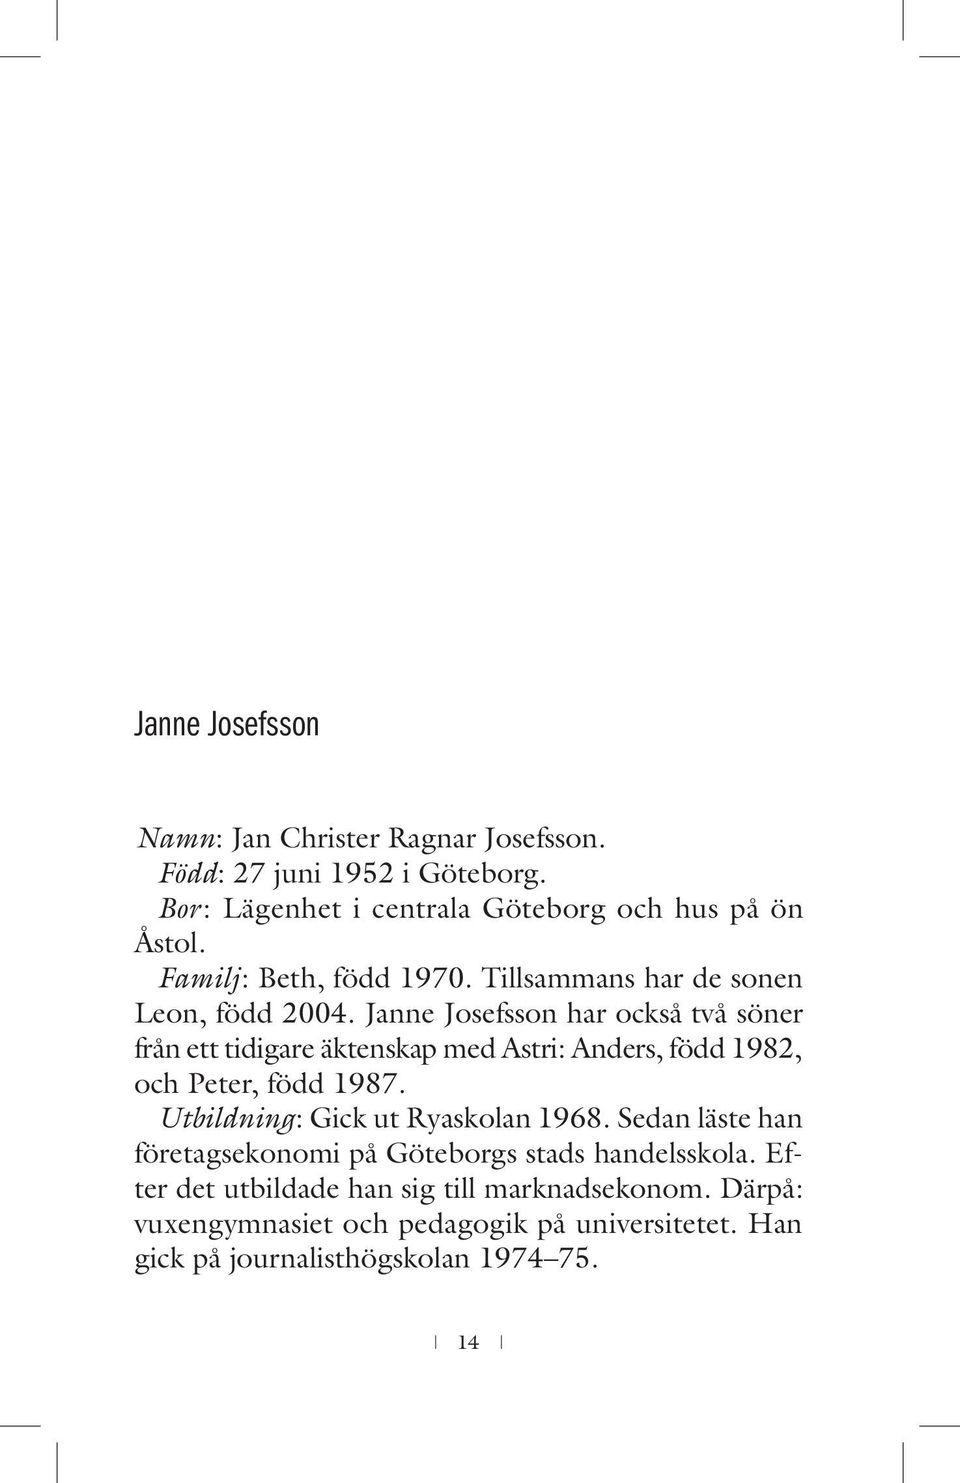 Janne Josefsson har också två sö ner från ett tidigare äktenskap med Astri: Anders, född 1982, och Peter, född 1987.